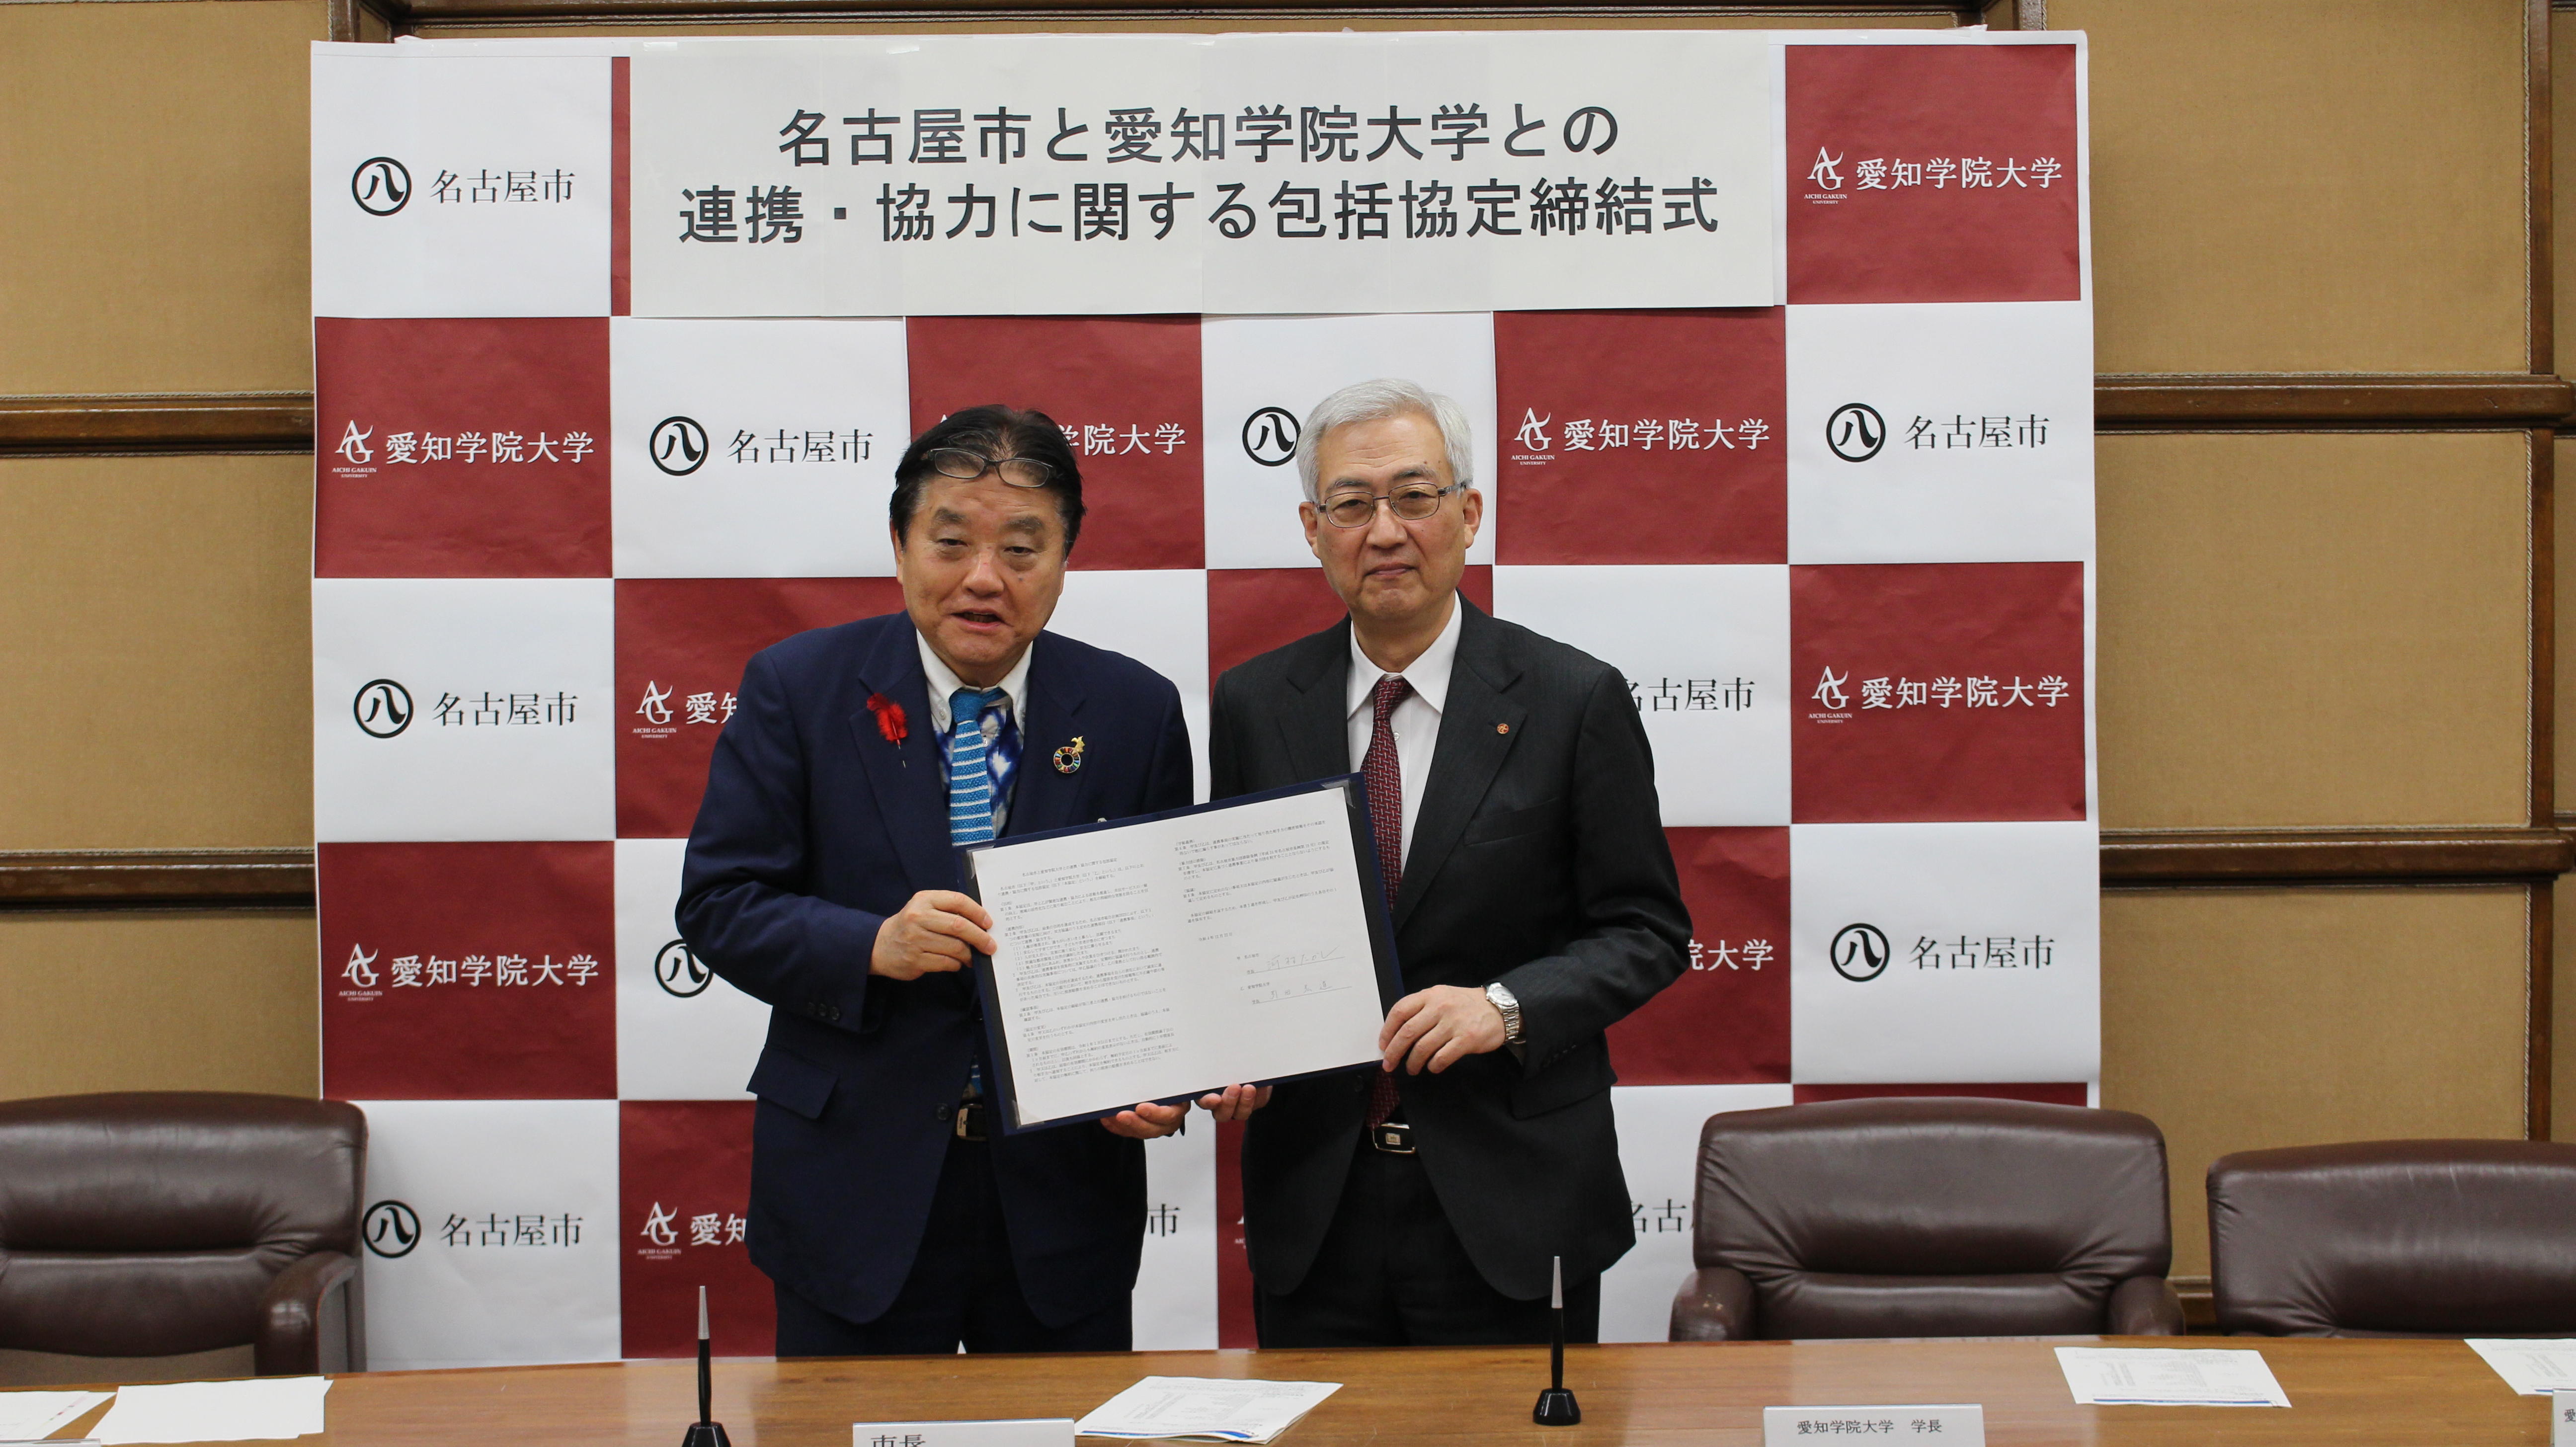 愛知学院大学が名古屋市と連携・協力に関する包括協定を締結～県内唯一の歯学部保有大学としての特色を有効に生かし地域課題に取り組む～